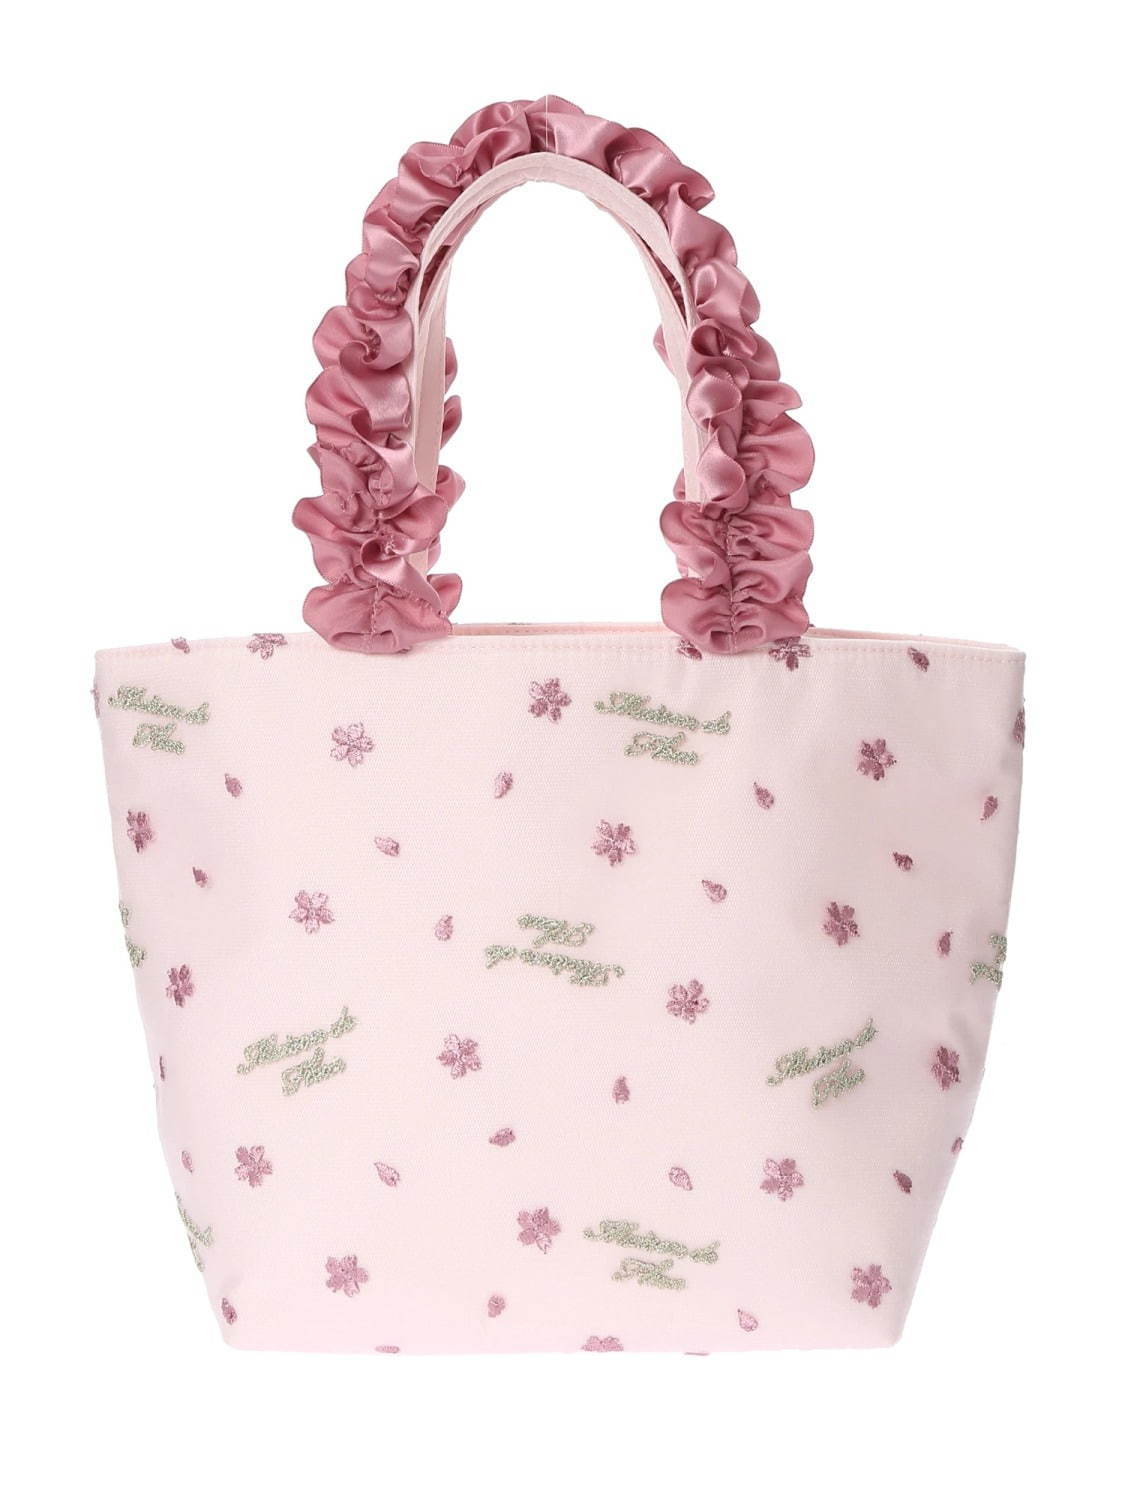 メゾン ド フルール“桜の花びら”刺繍トートバッグ、チュール生地